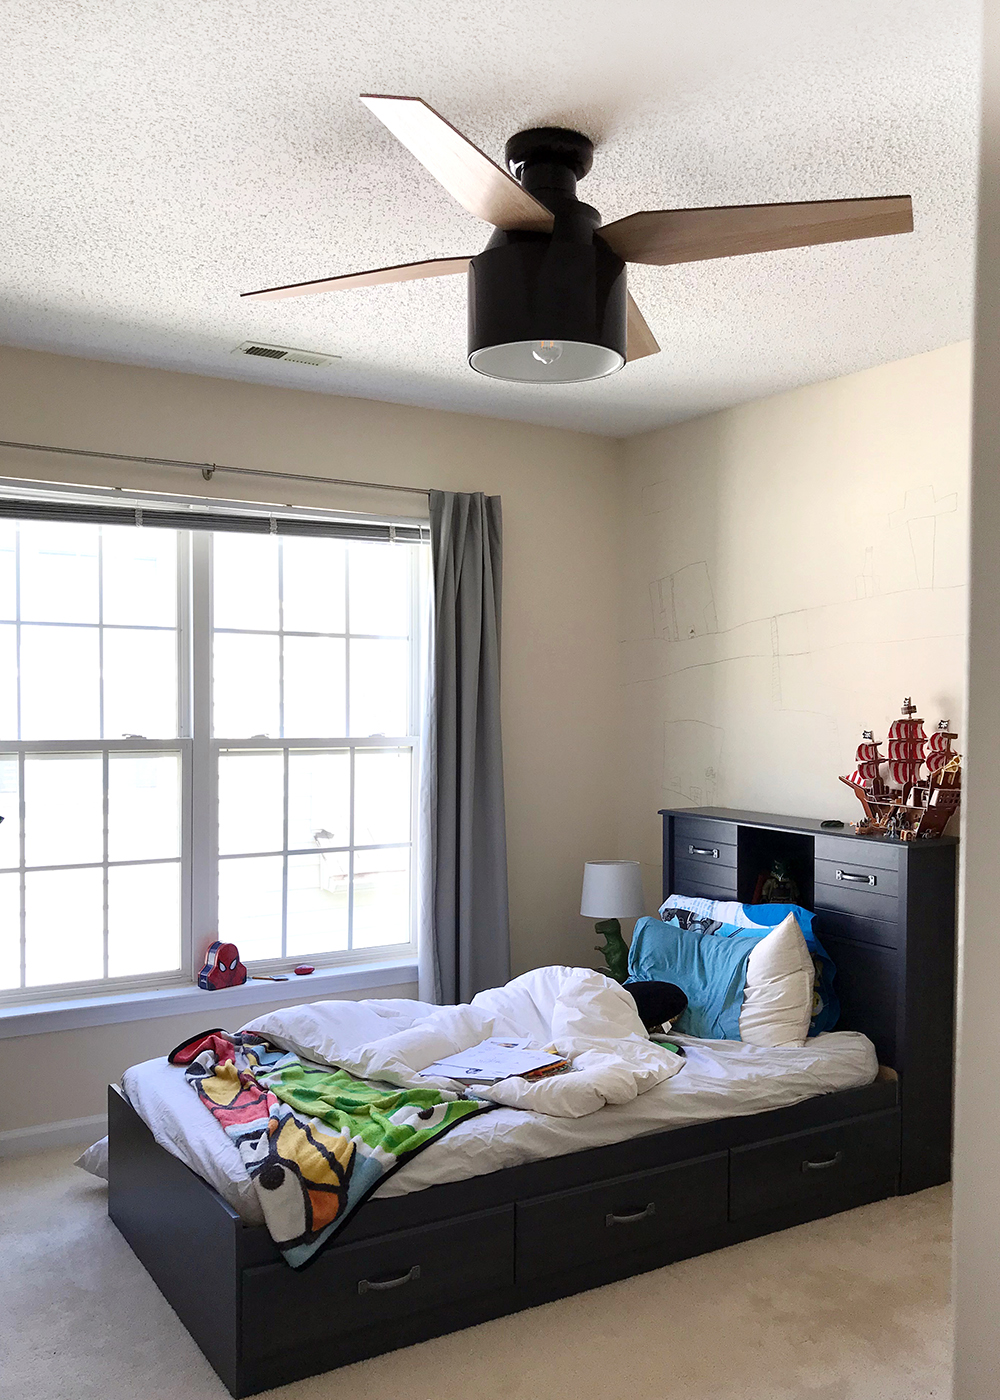 Loving the new ceiling fan